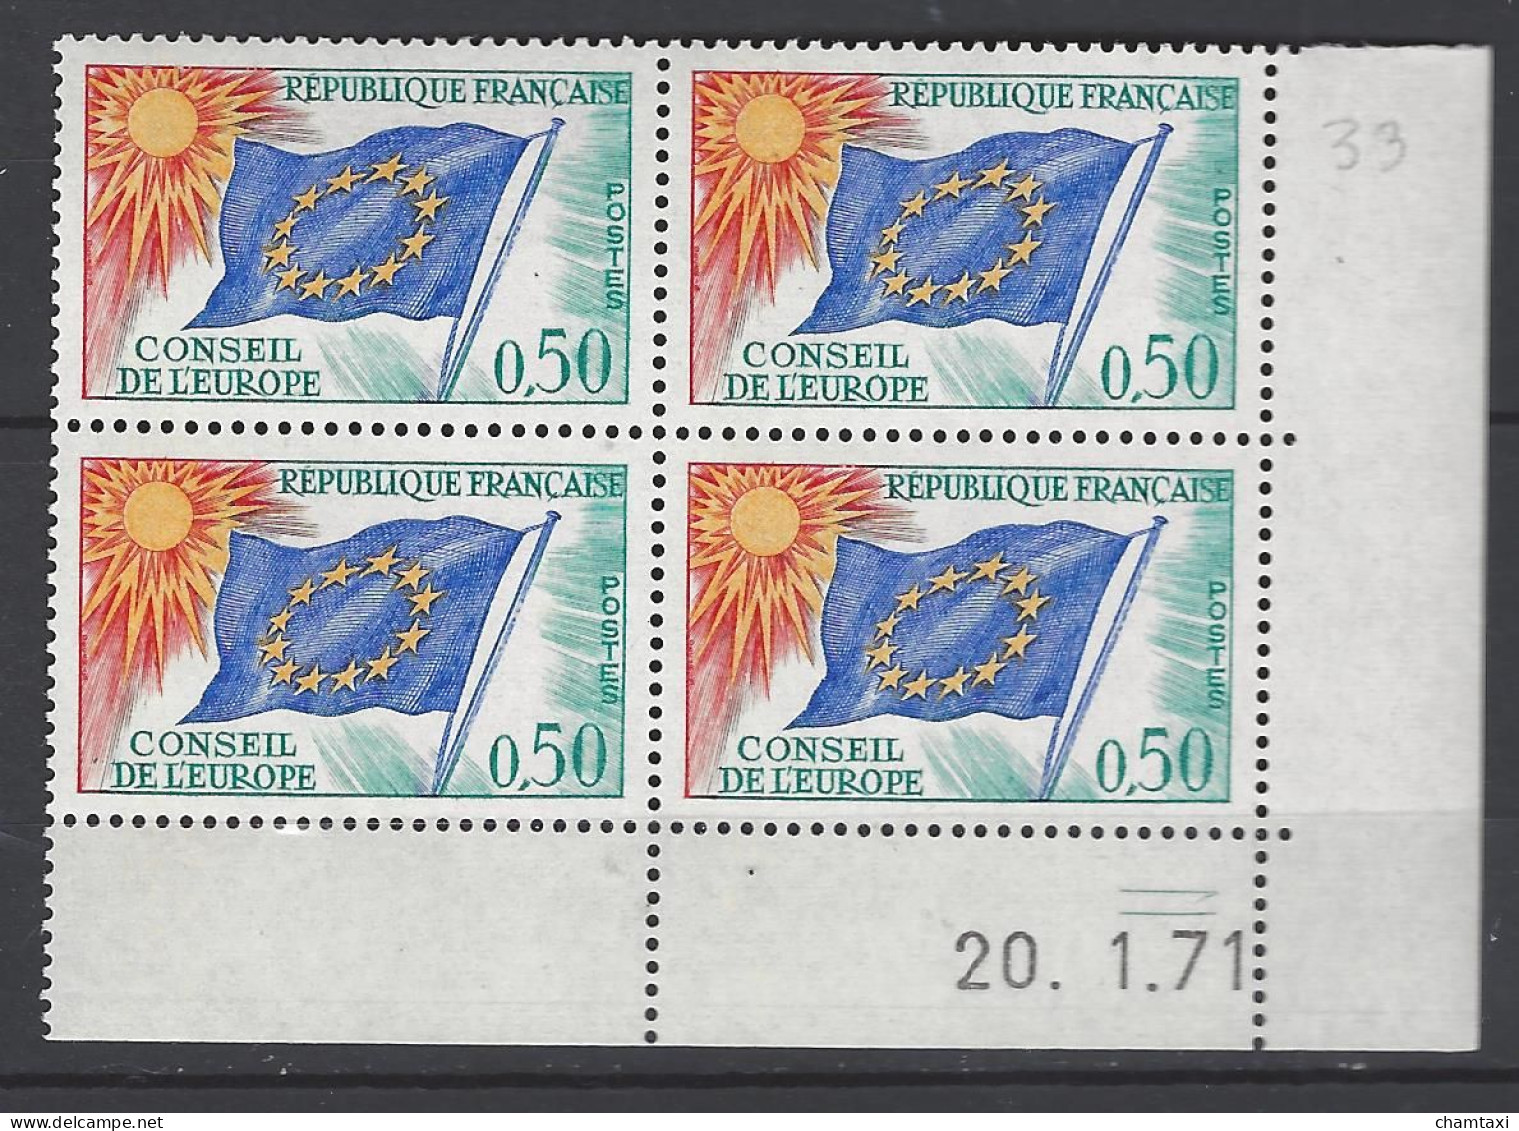 CD 33 FRANCE 1971 TIMBRE SERVICE CONSEIL DE L EUROPE DRAPEAU TYPE 1958 1959  COIN DATE 33 : 20 / 1 / 71 - Dienstzegels